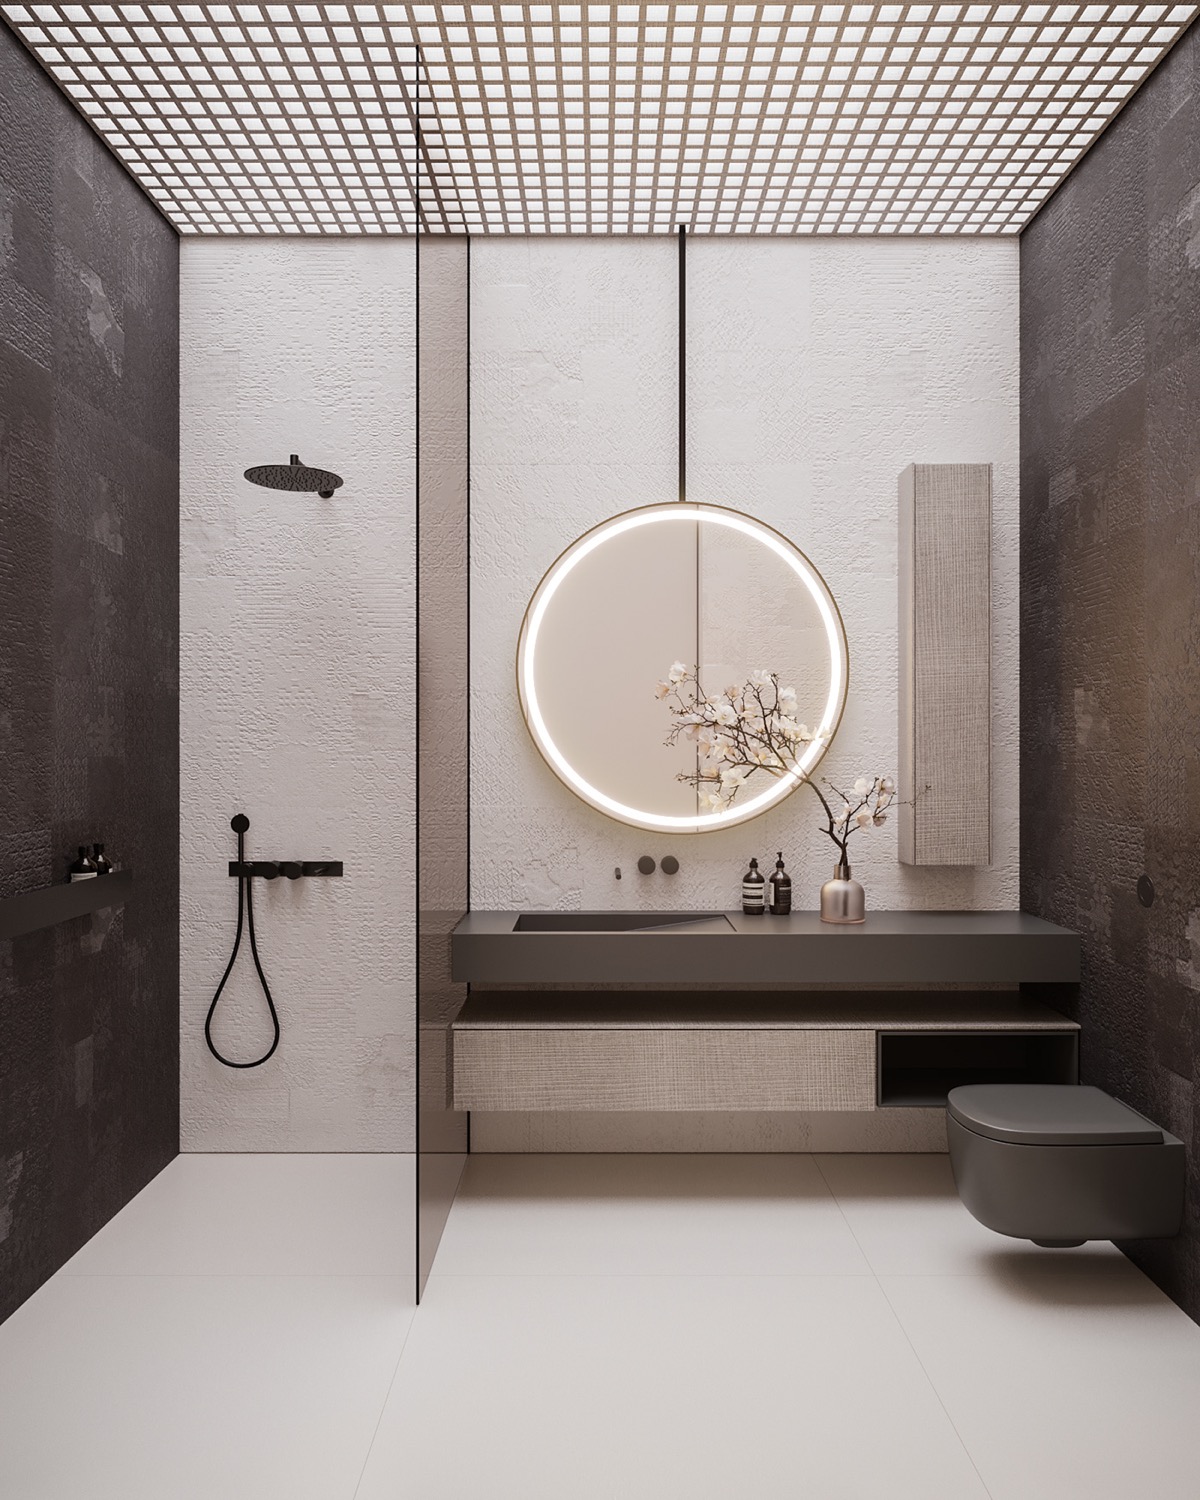 Gương tròn kết hợp đèn LED tạo tiêu điểm ấn tượng cho phòng tắm.